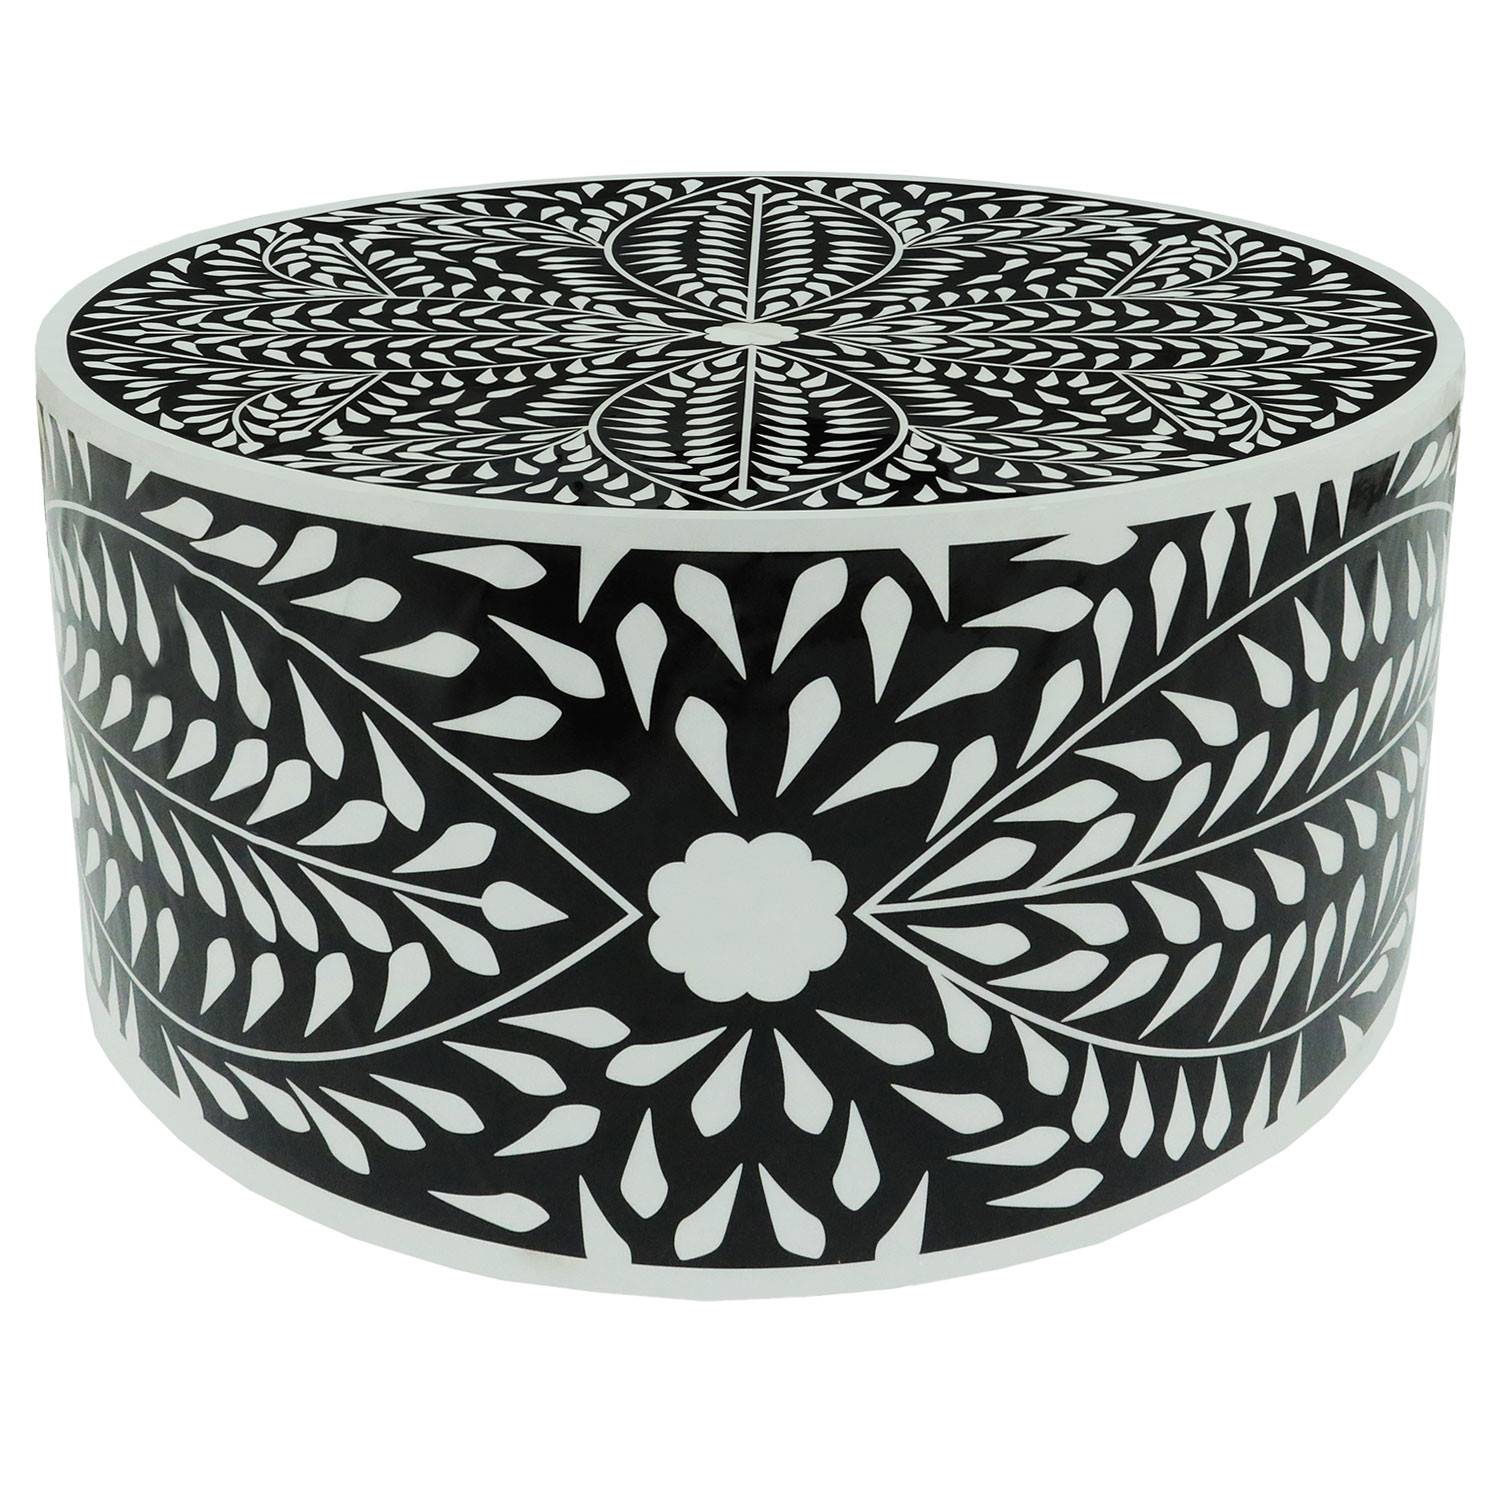 Mesa de centro redonda de estilo arty Ø66cm Viliana Motivo floral blanco y negro